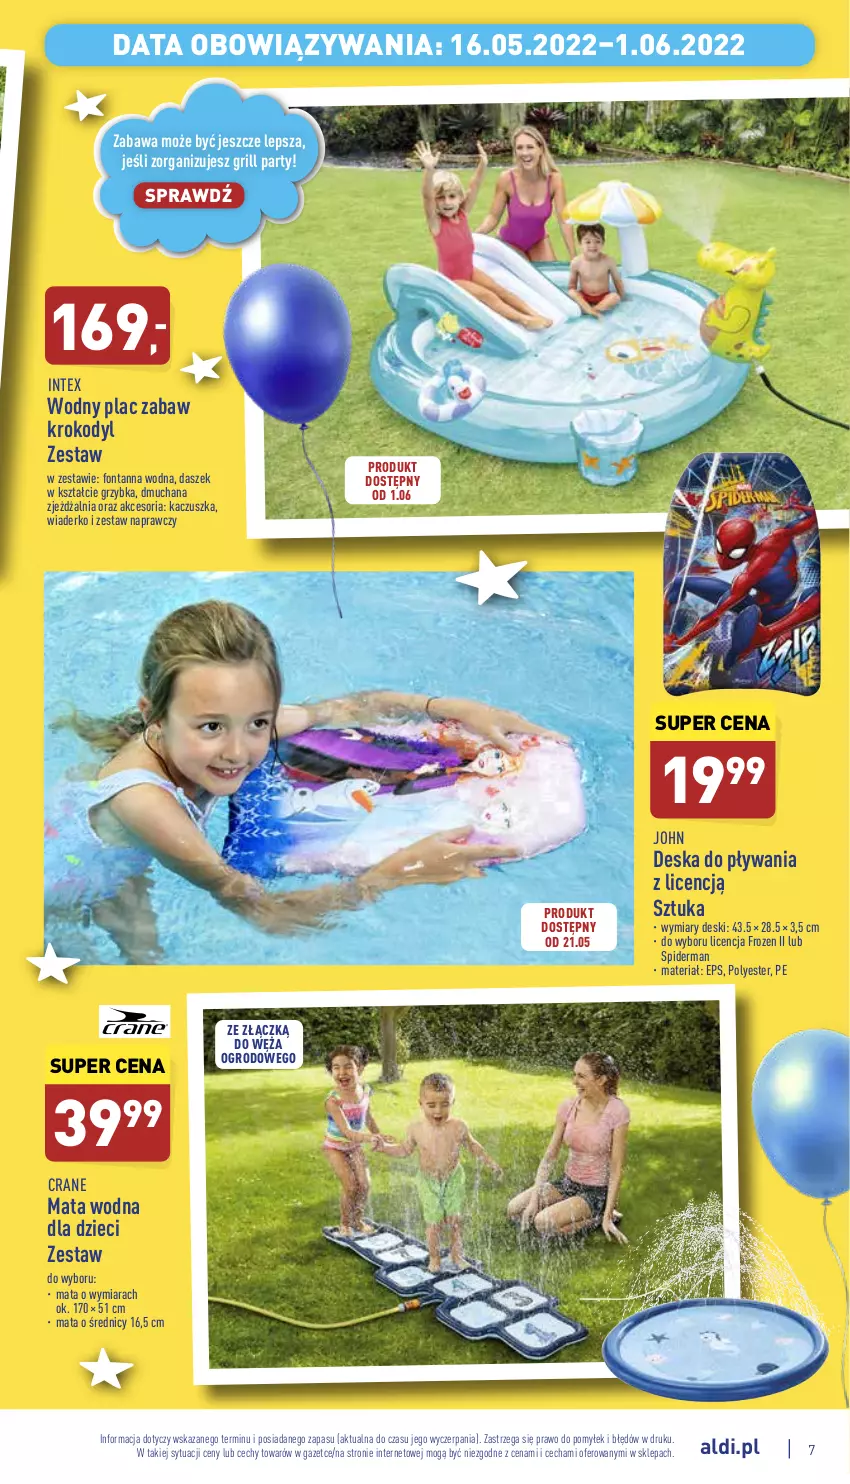 Gazetka promocyjna Aldi - Dzień Dziecka - ważna 16.05 do 01.06.2022 - strona 7 - produkty: Dzieci, Frozen, Grill, Mata wodna, Spiderman